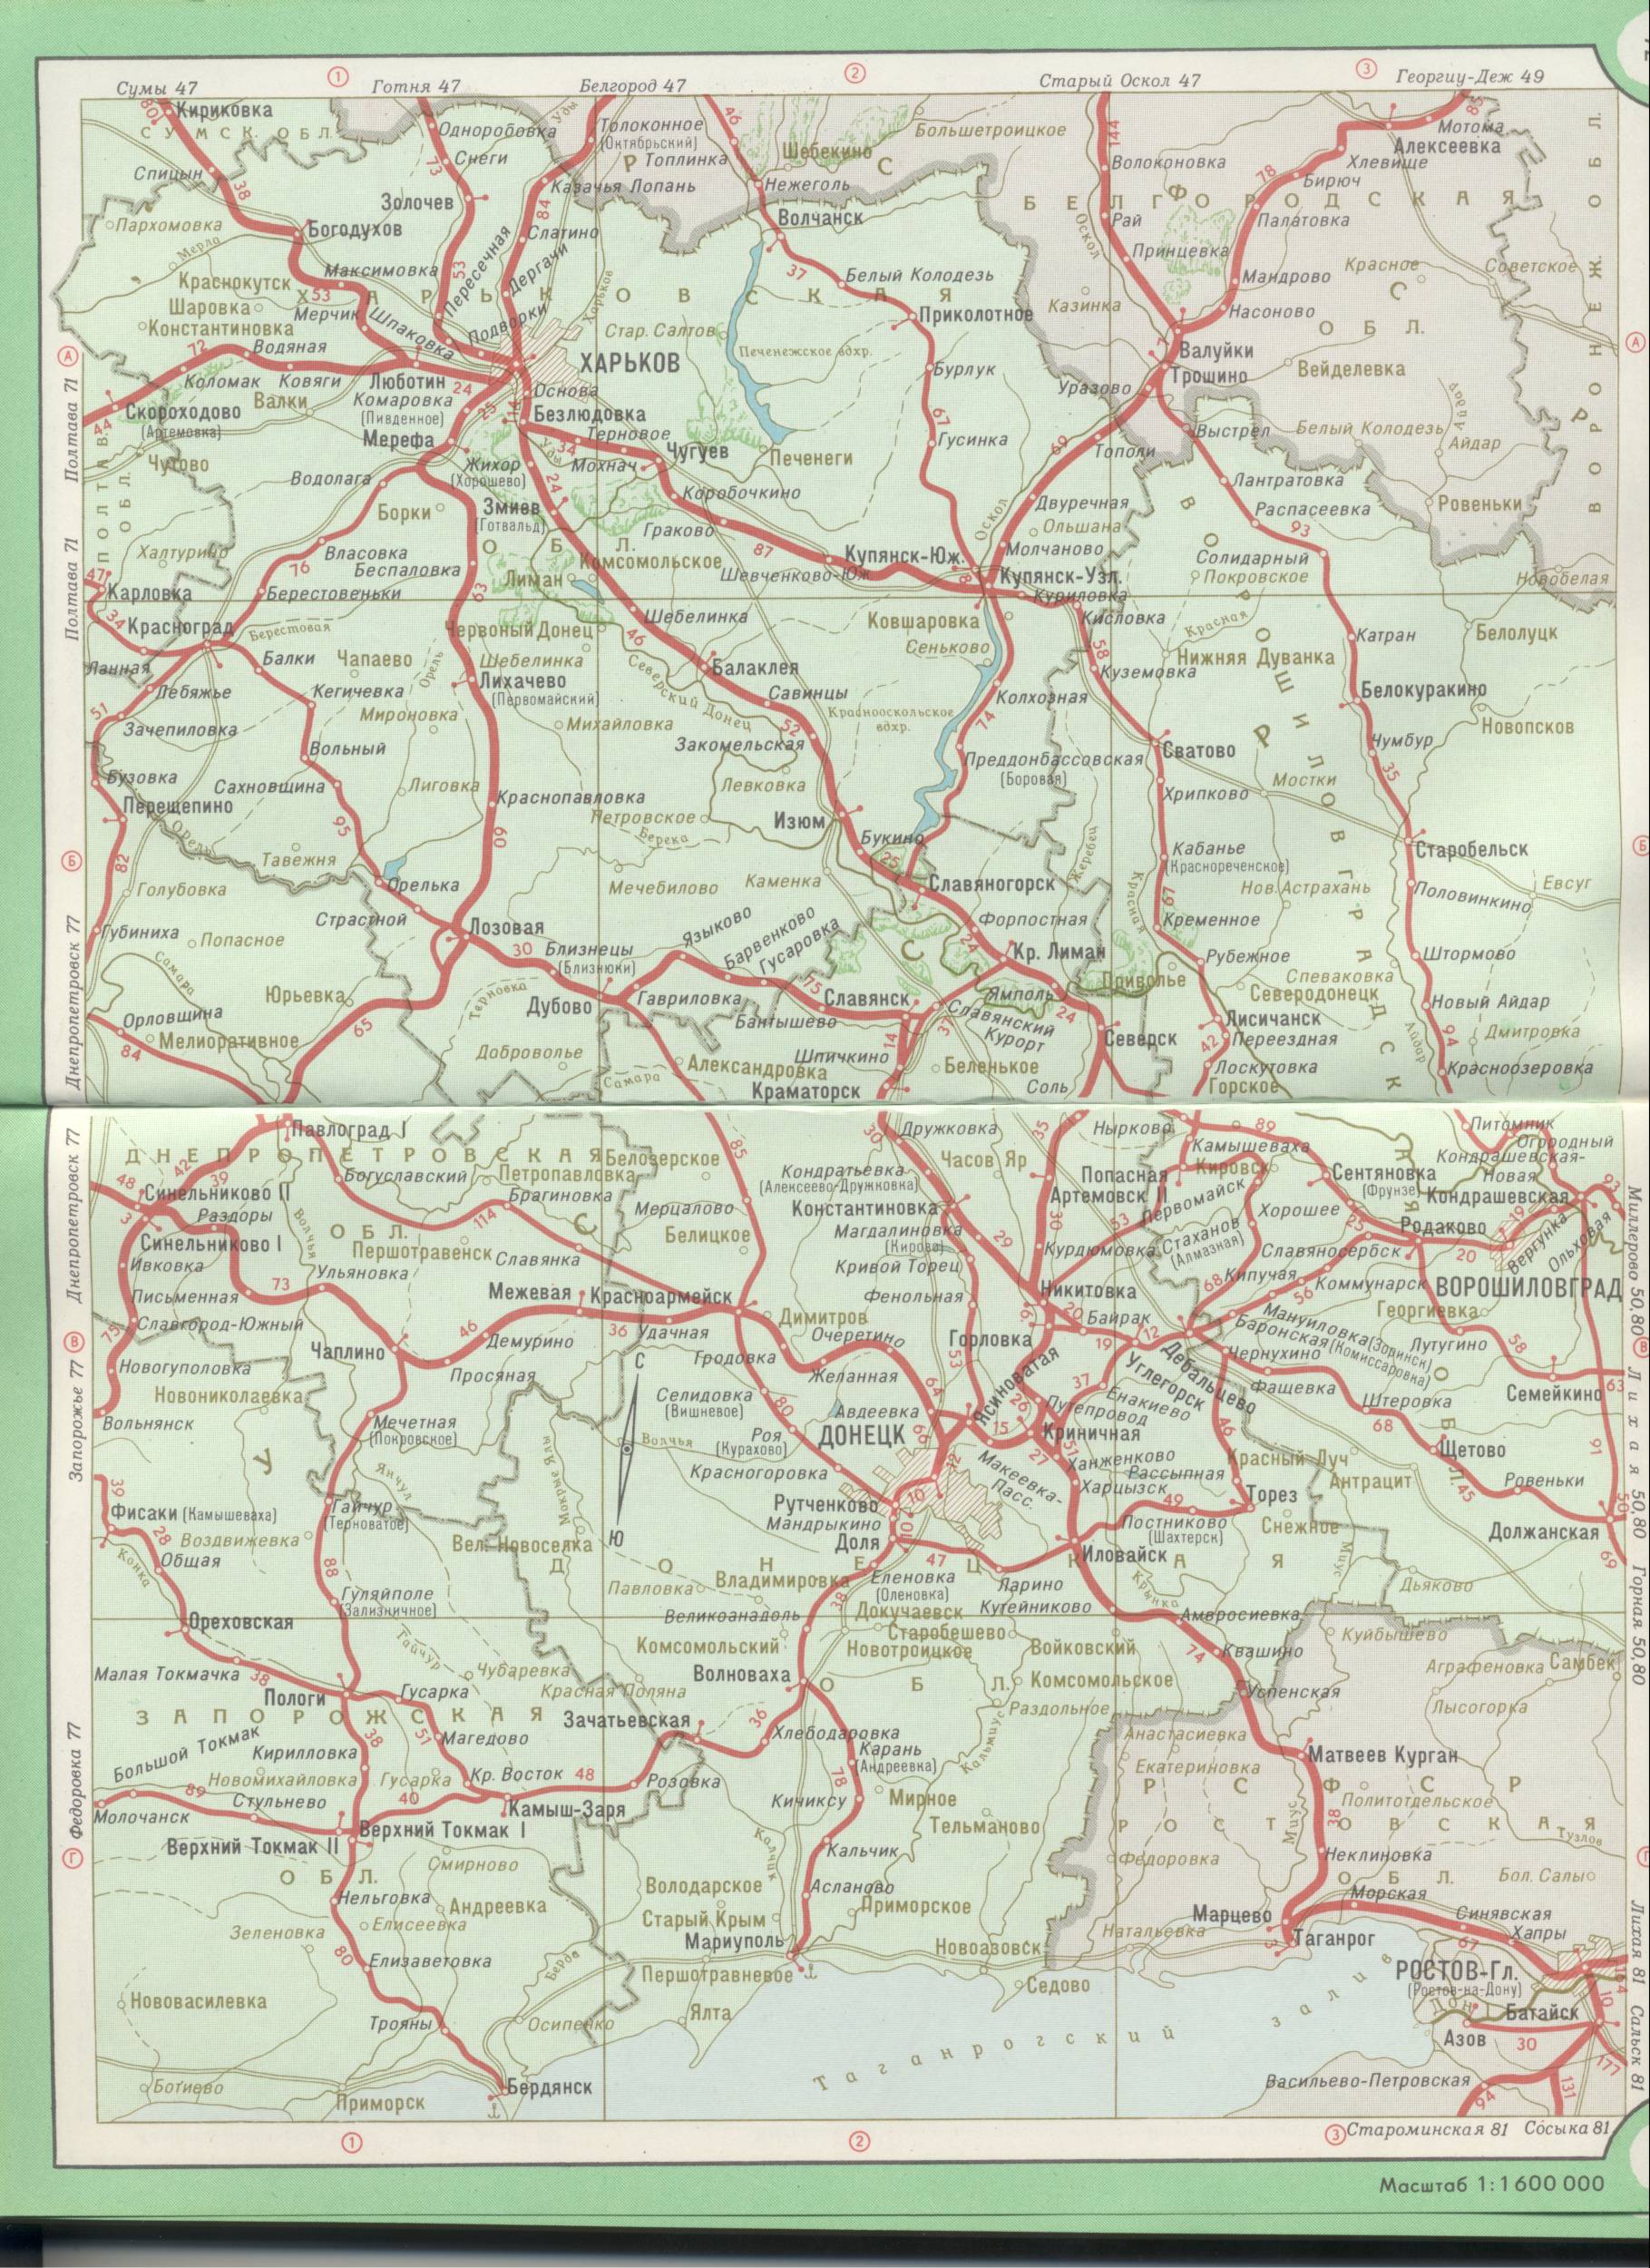 Karte der Ukraine. Fahreisenbahnen der Ukraine - Charkiw, Dnipropetrowsk